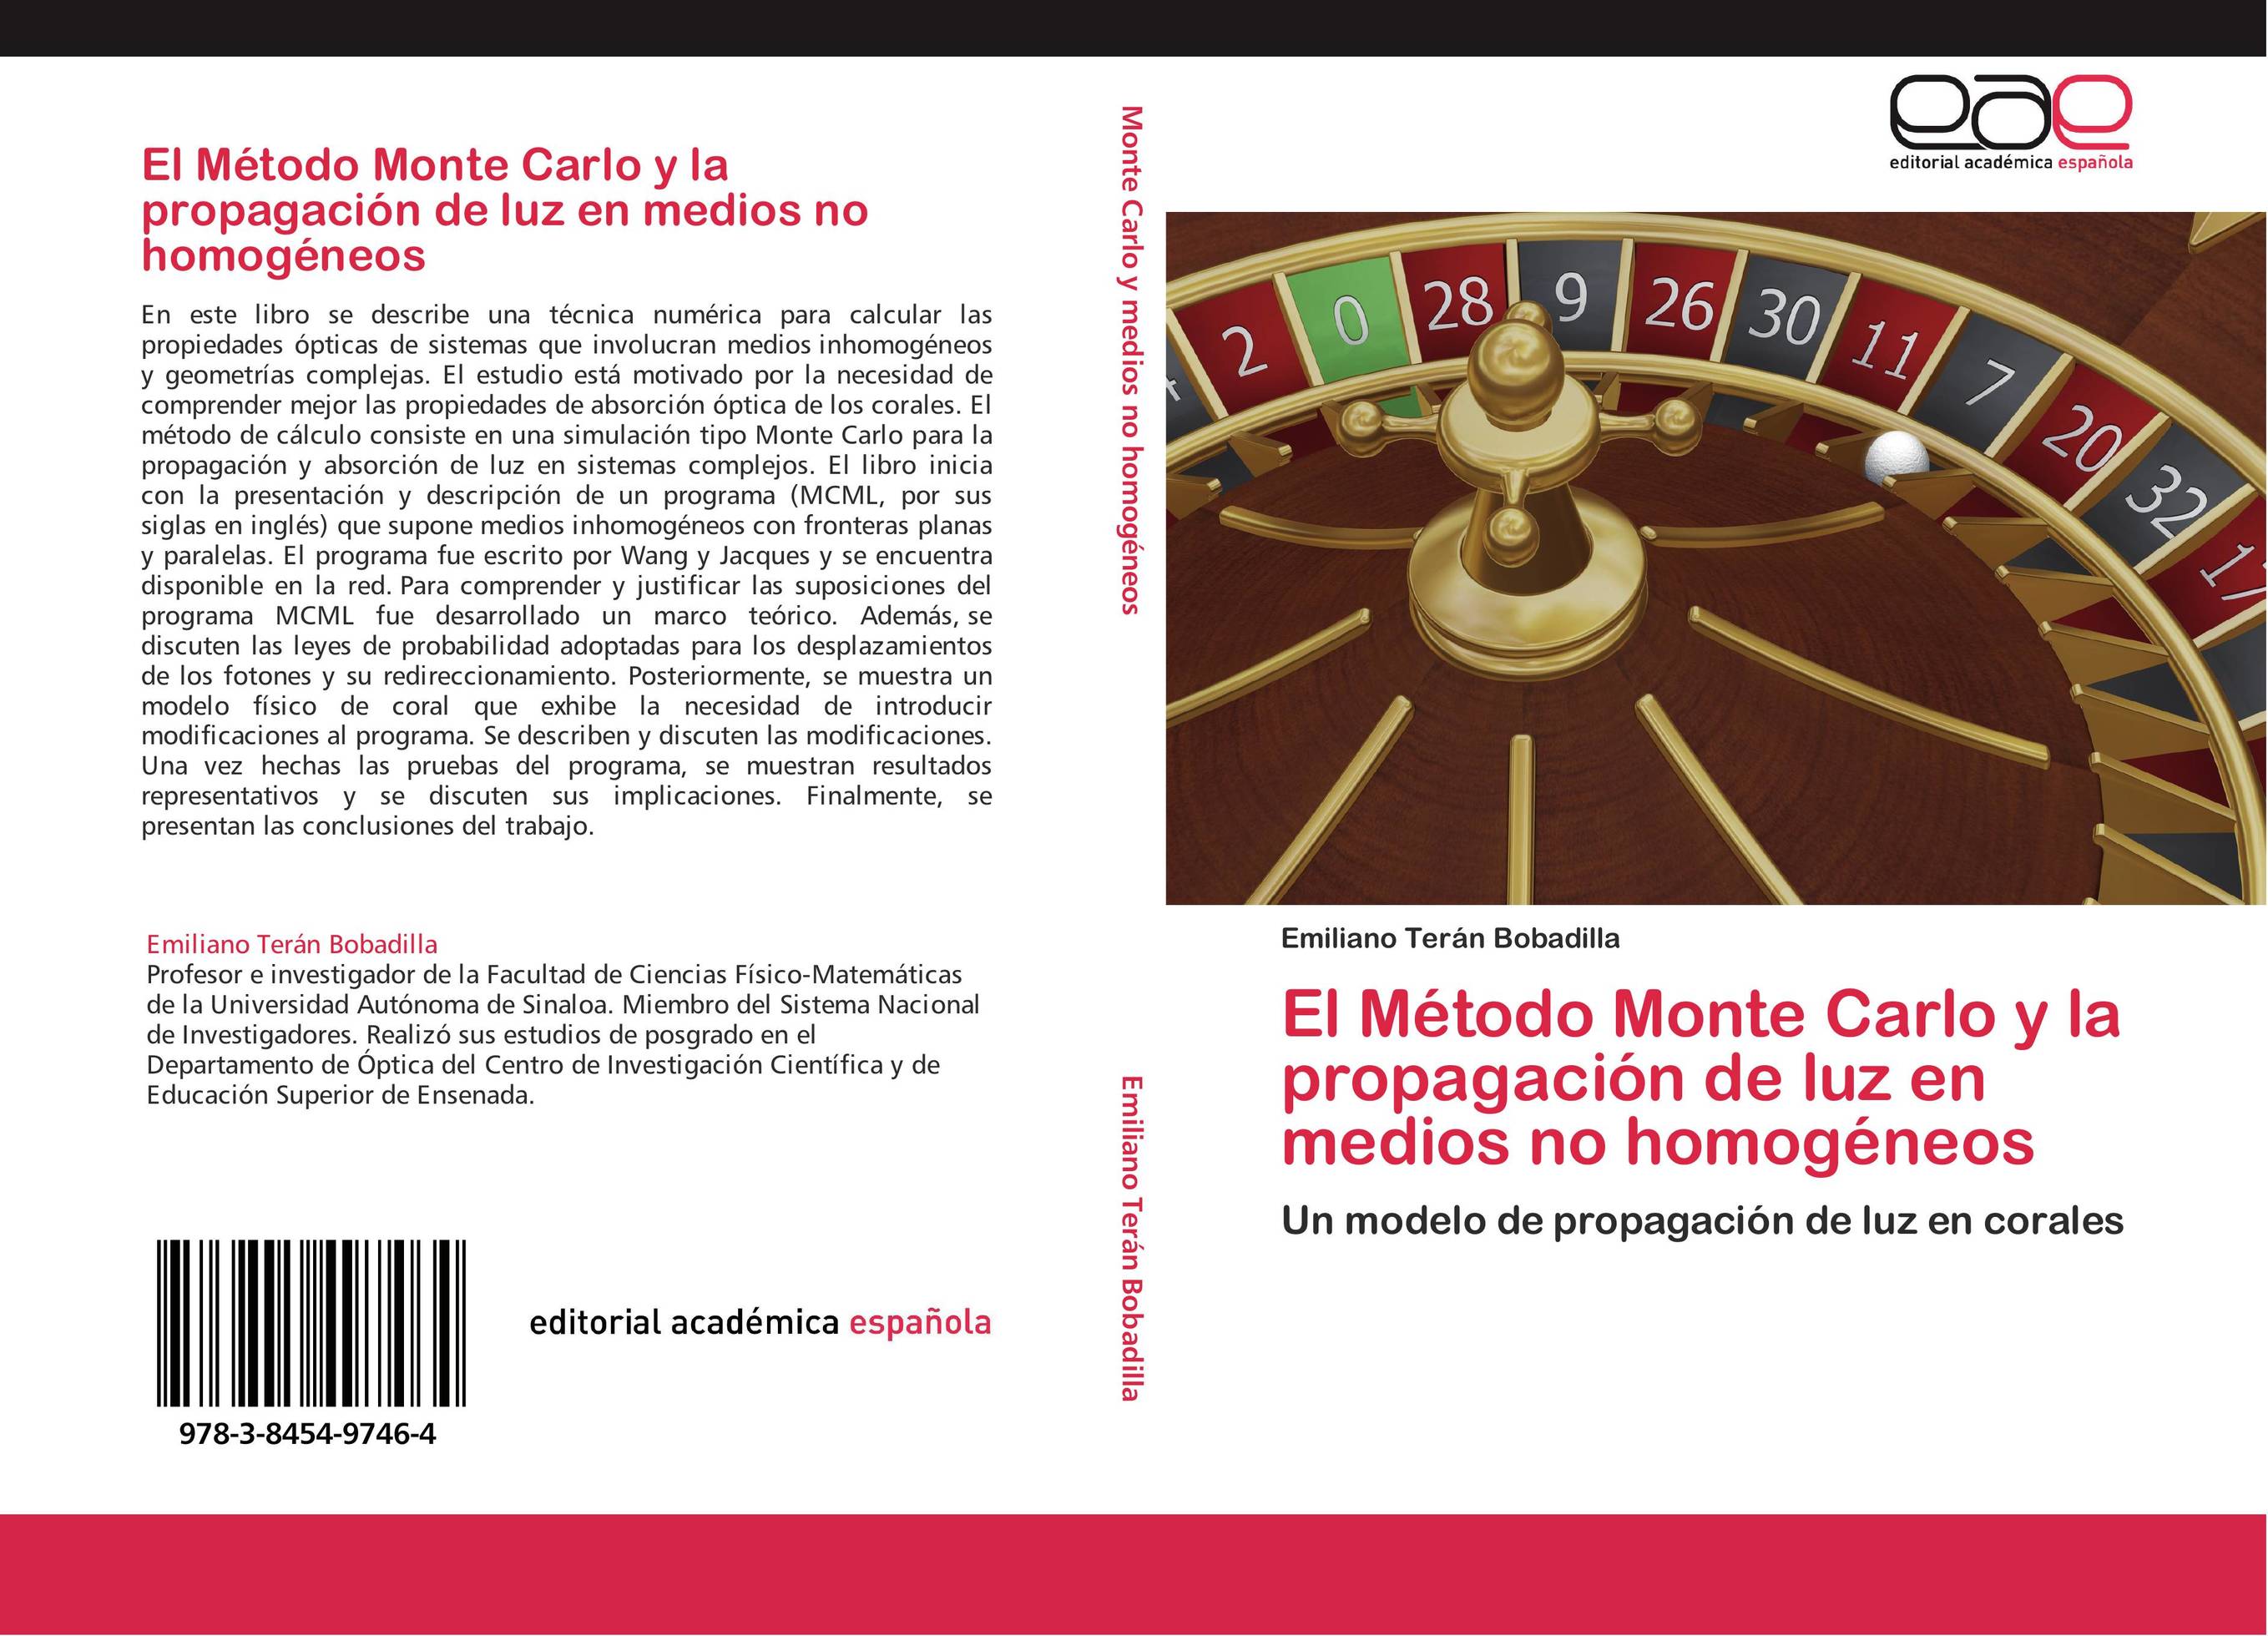 El Método Monte Carlo y la propagación de luz en medios no homogéneos